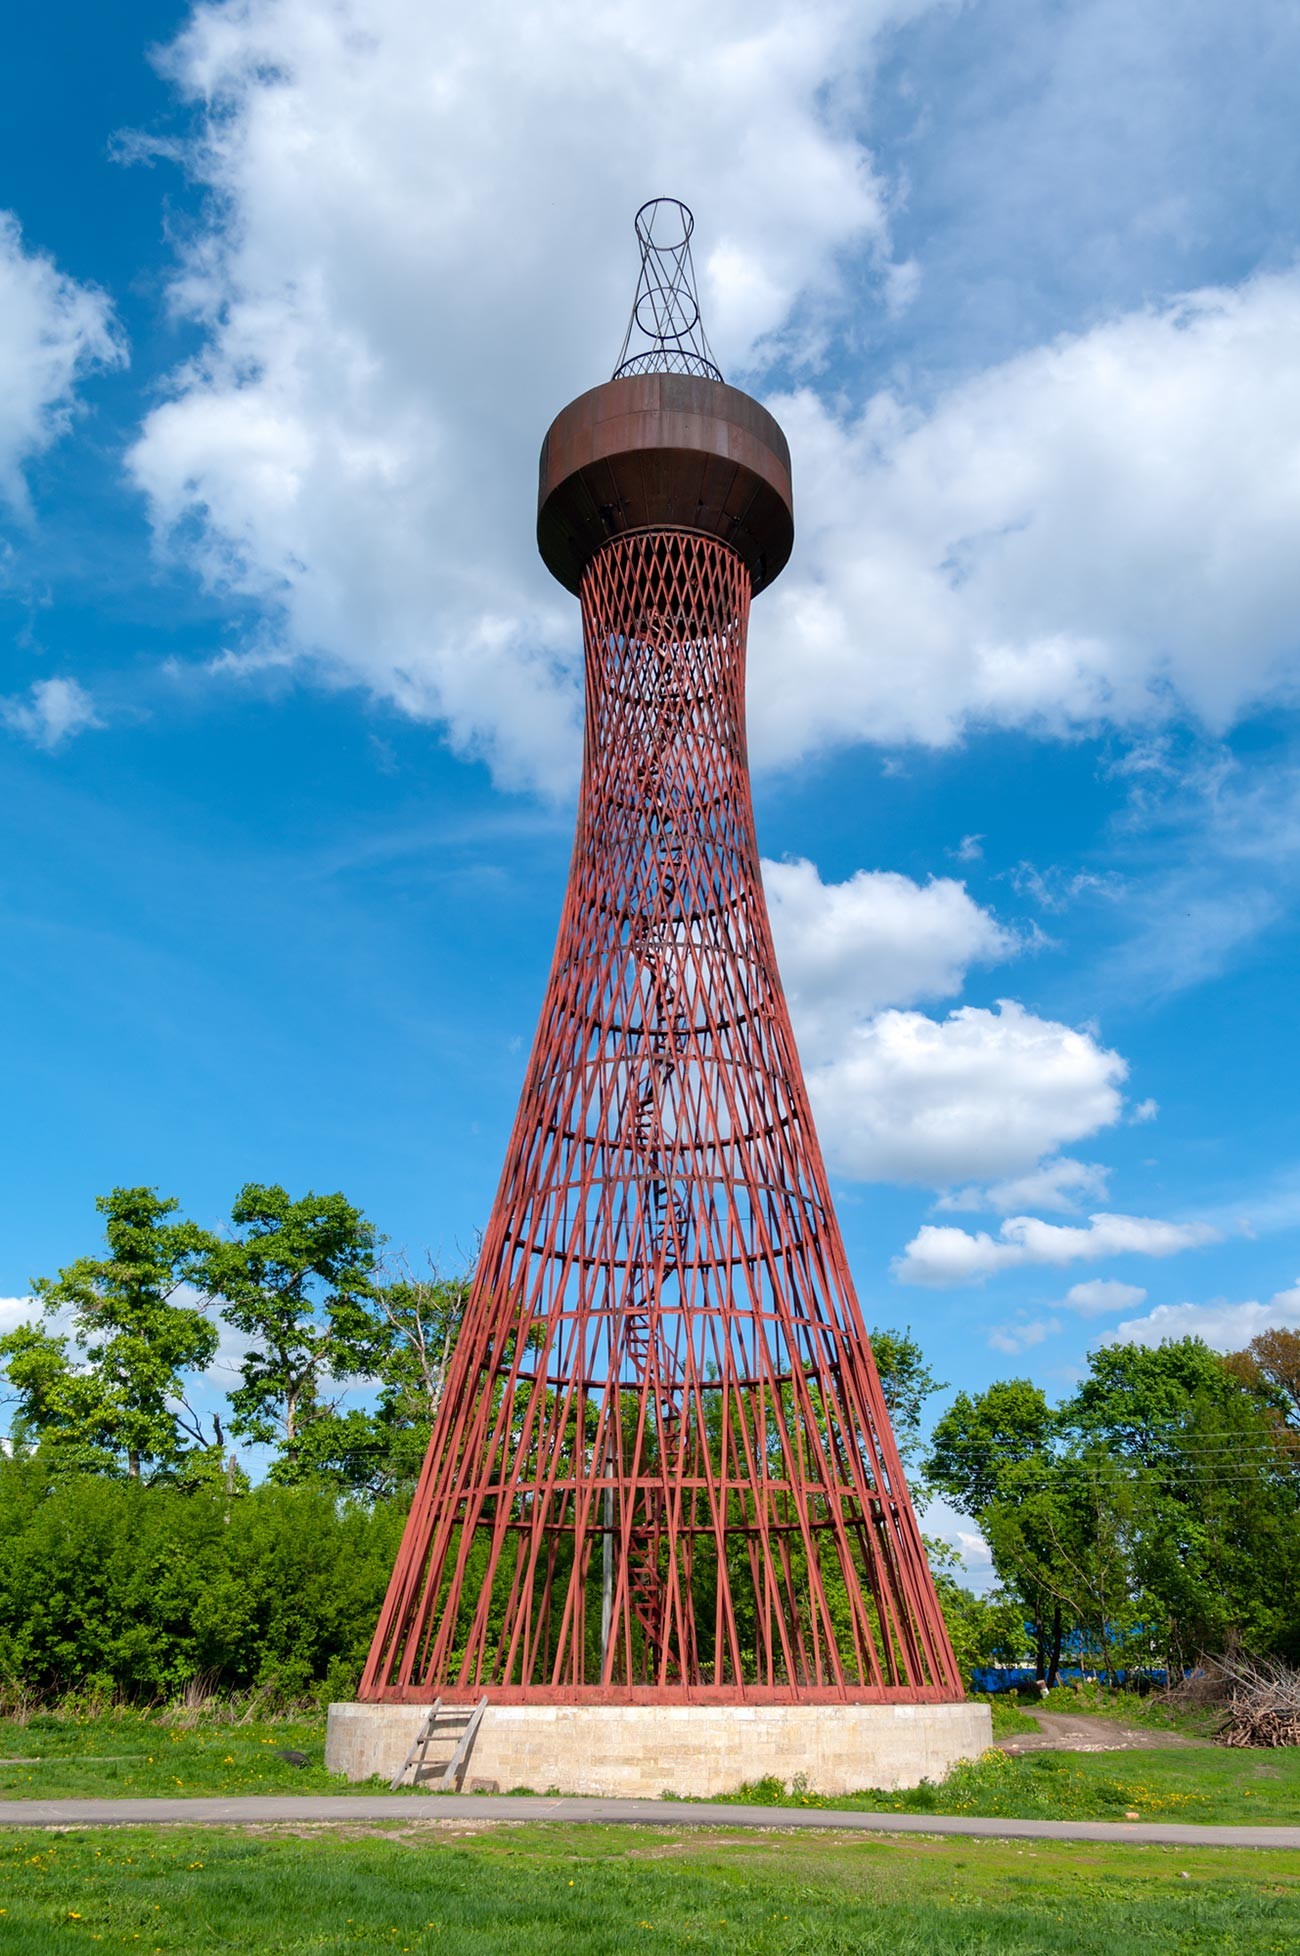 Shukhov's first hyperboloid tower in Polibino, Lipetsk oblast'.